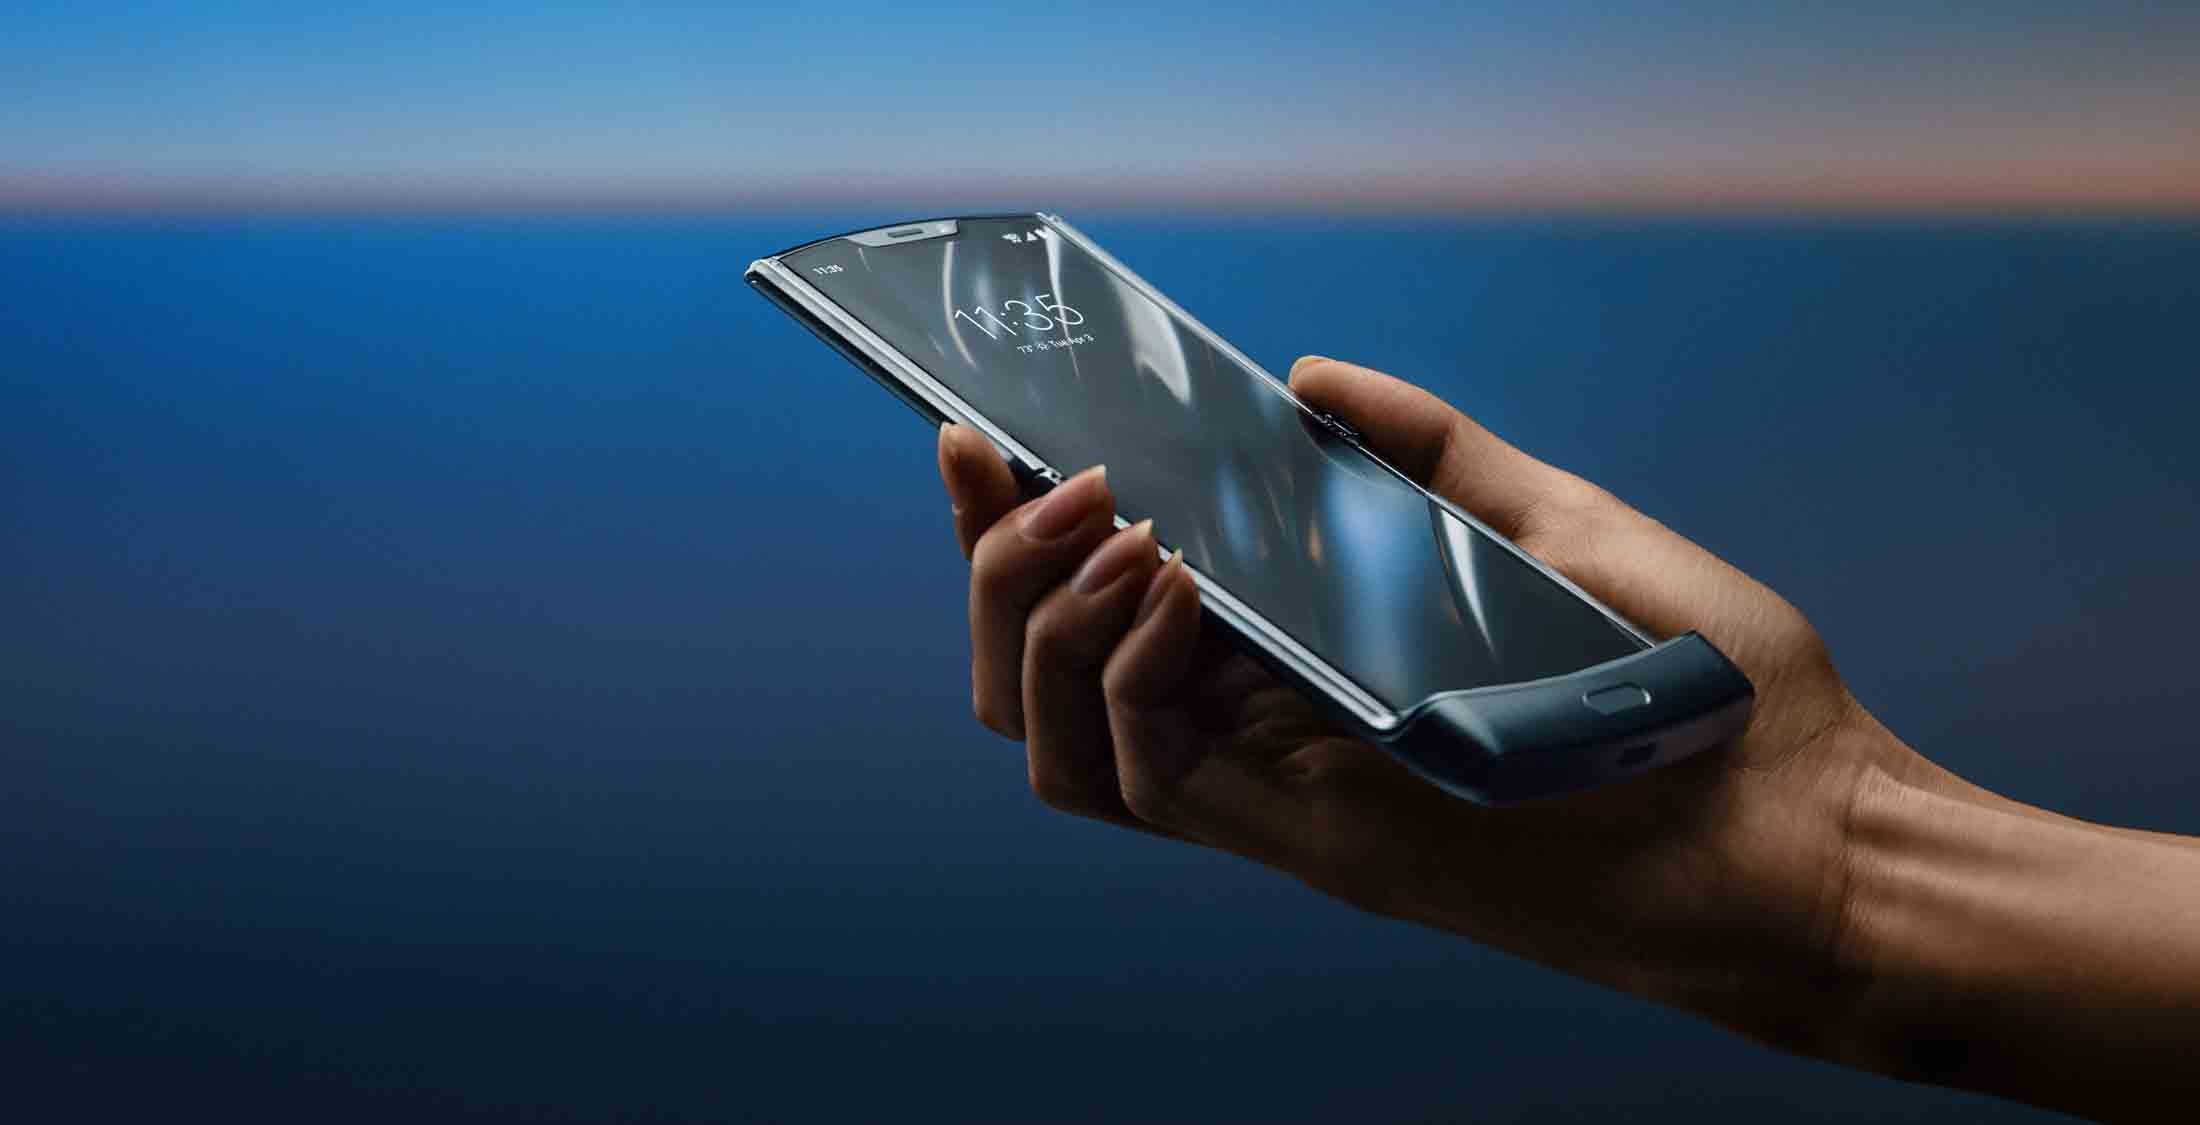 Se rumorea que Motorola está trabajando en un teléfono inteligente plegable